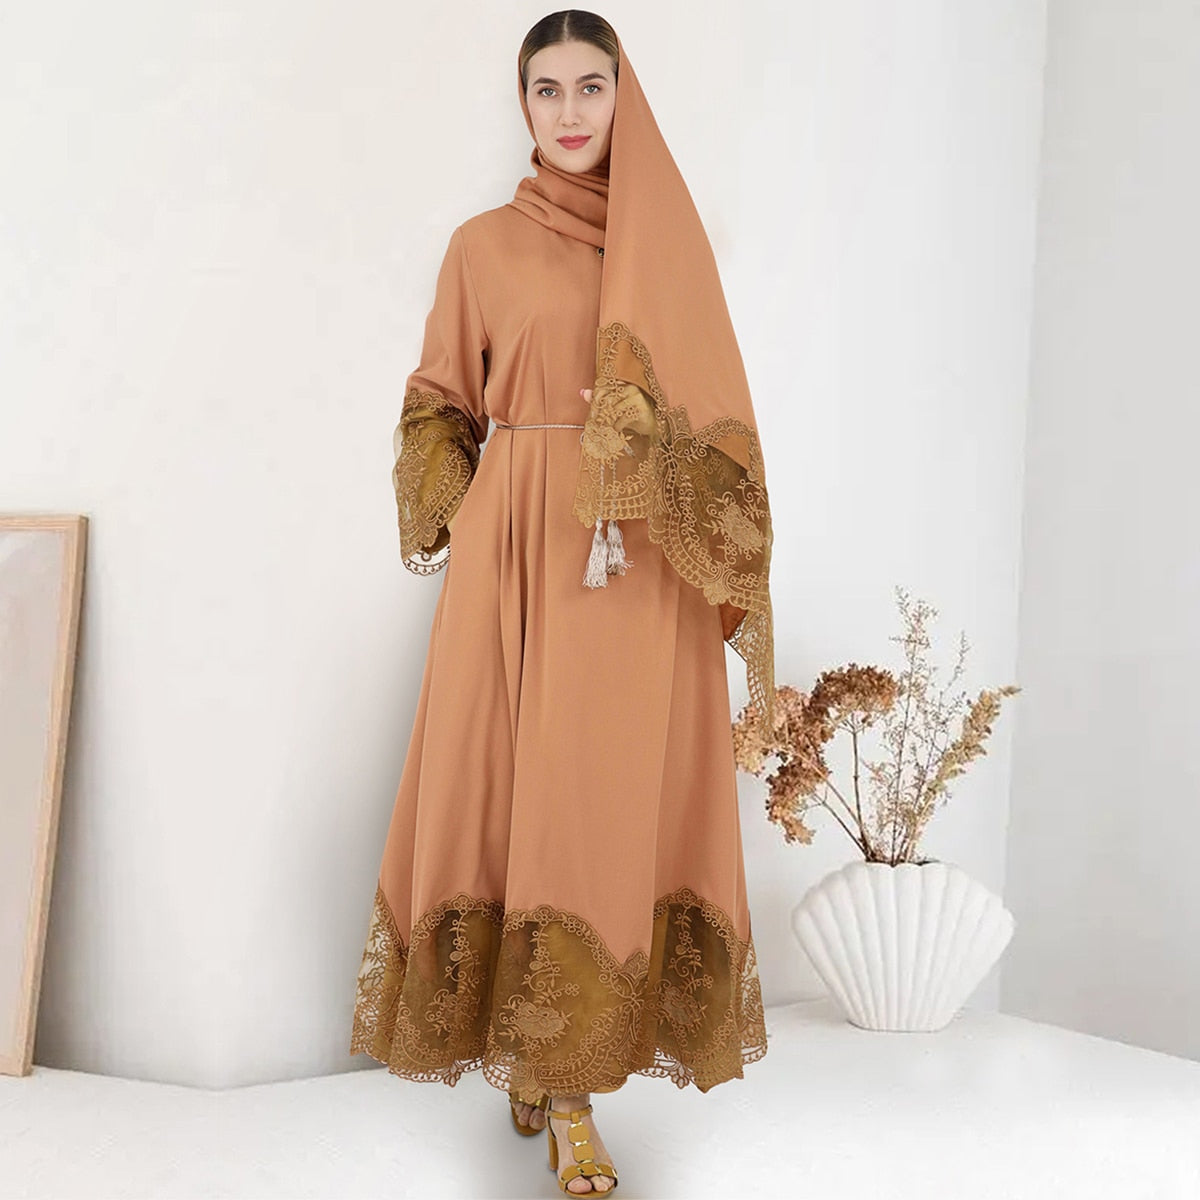 Robe femme arabe